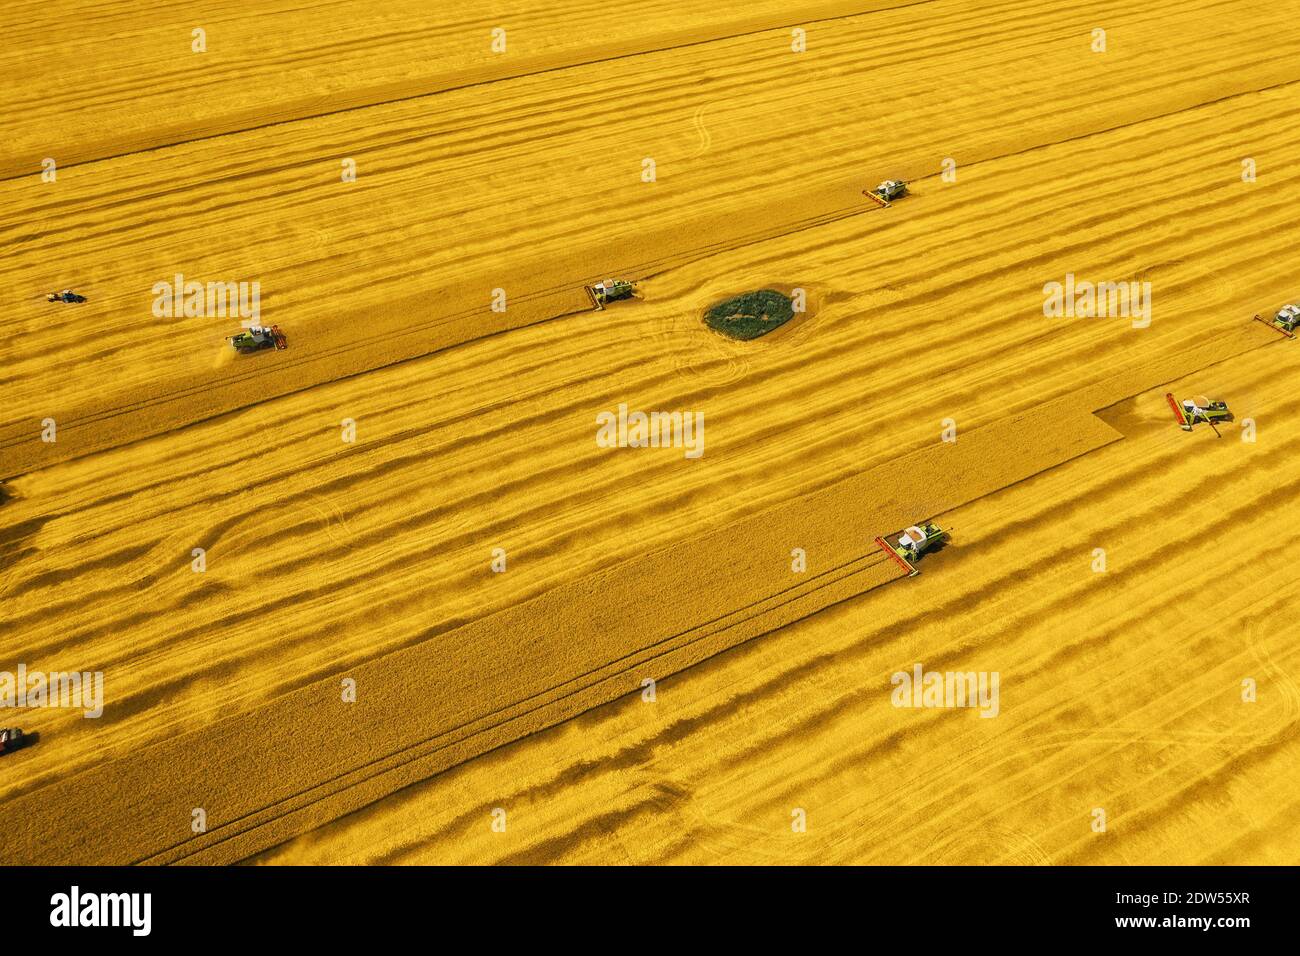 Moissonneuses-batteuses et machines travaillant dans le champ de blé de couleur jaune ou Fortuna Gold tendance, vue aérienne. Banque D'Images